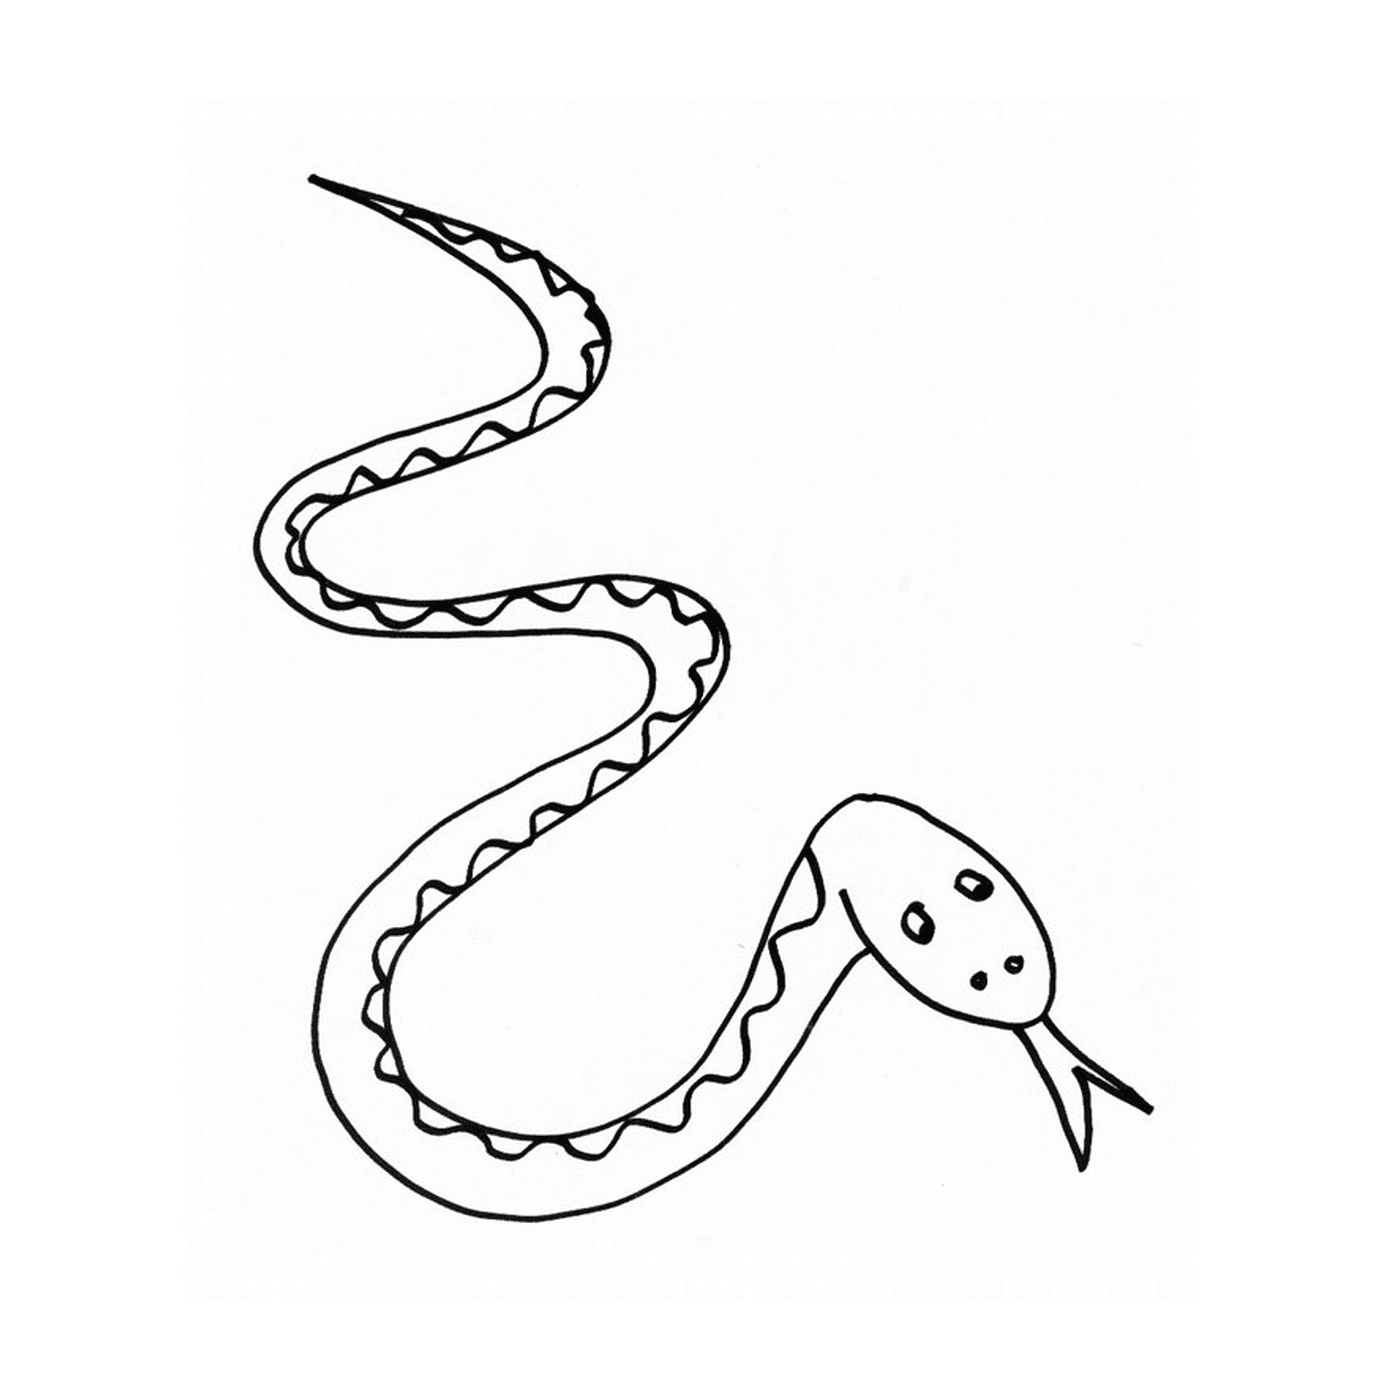  Un serpente disegnato 